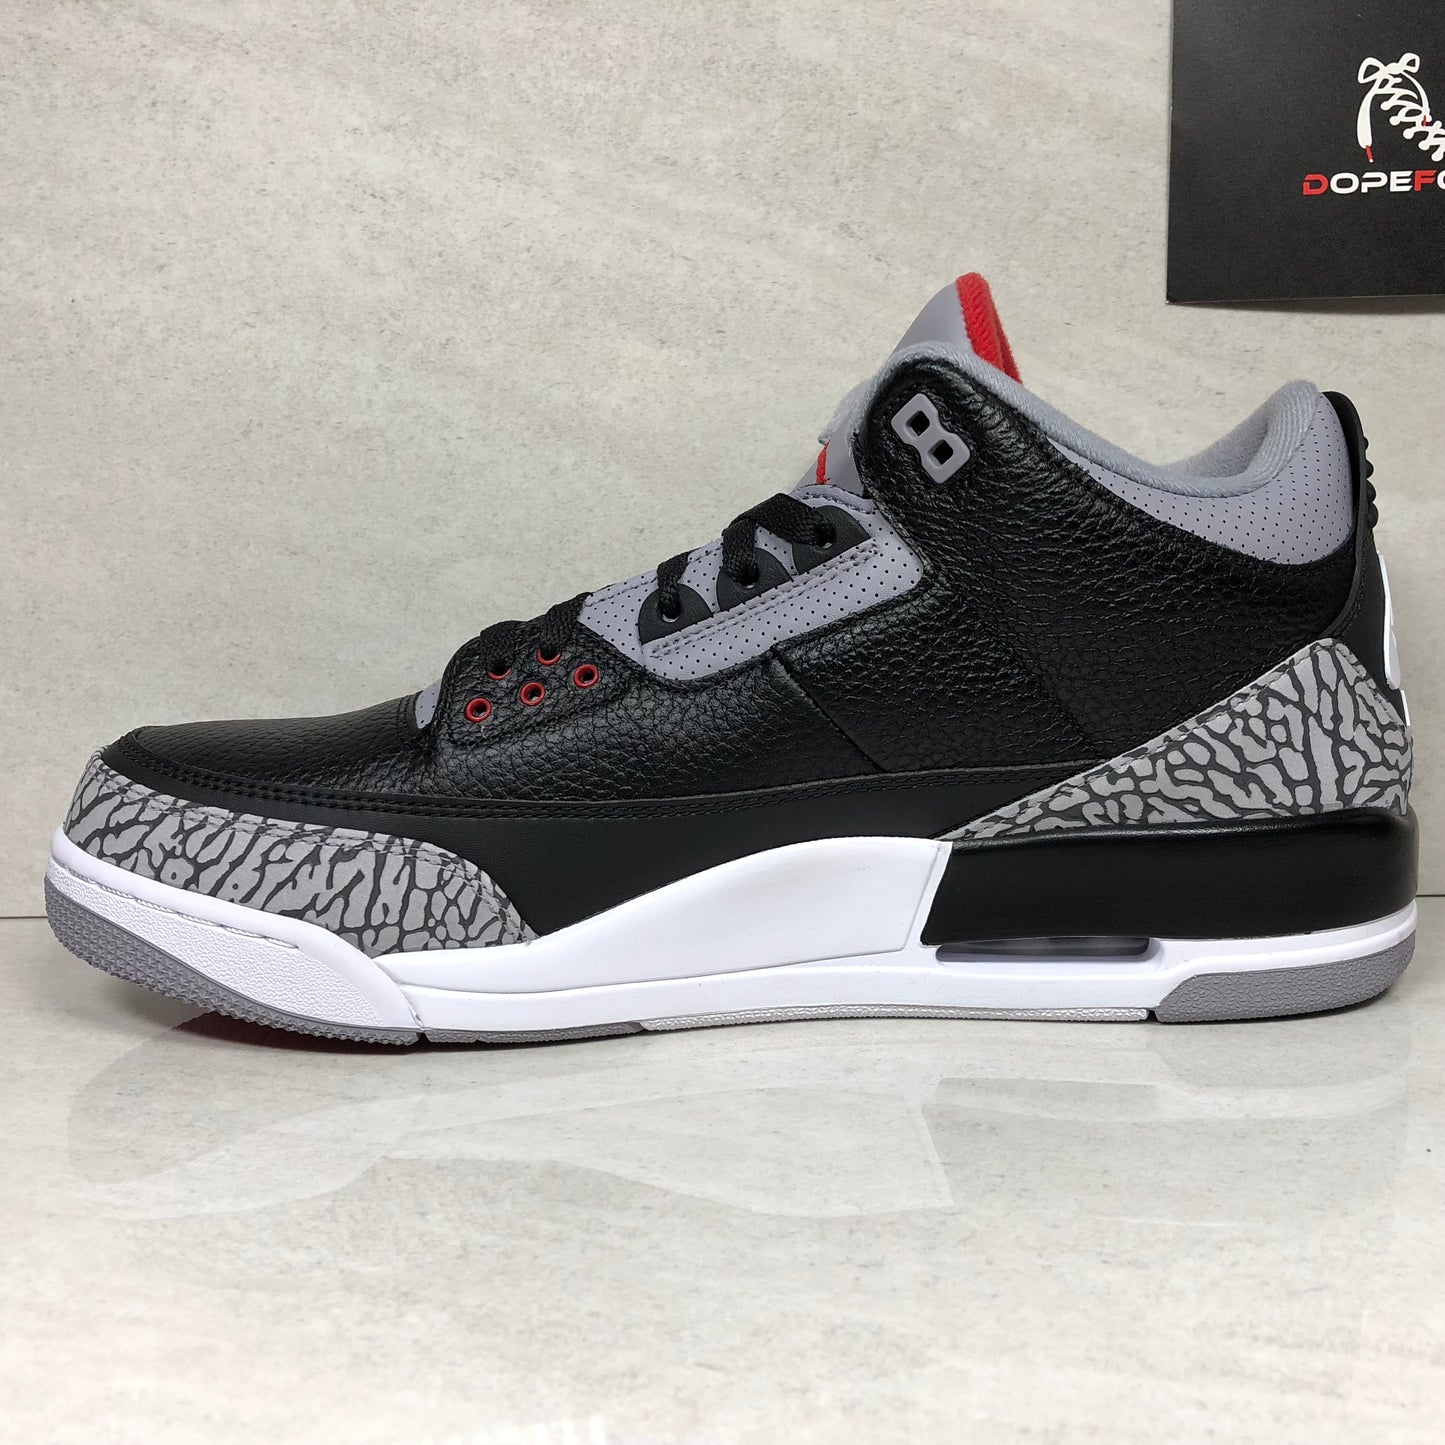 Nike Air Jordan 3 OG Retro Black Cement 2018 - 854262 001 - Size 10/10.5